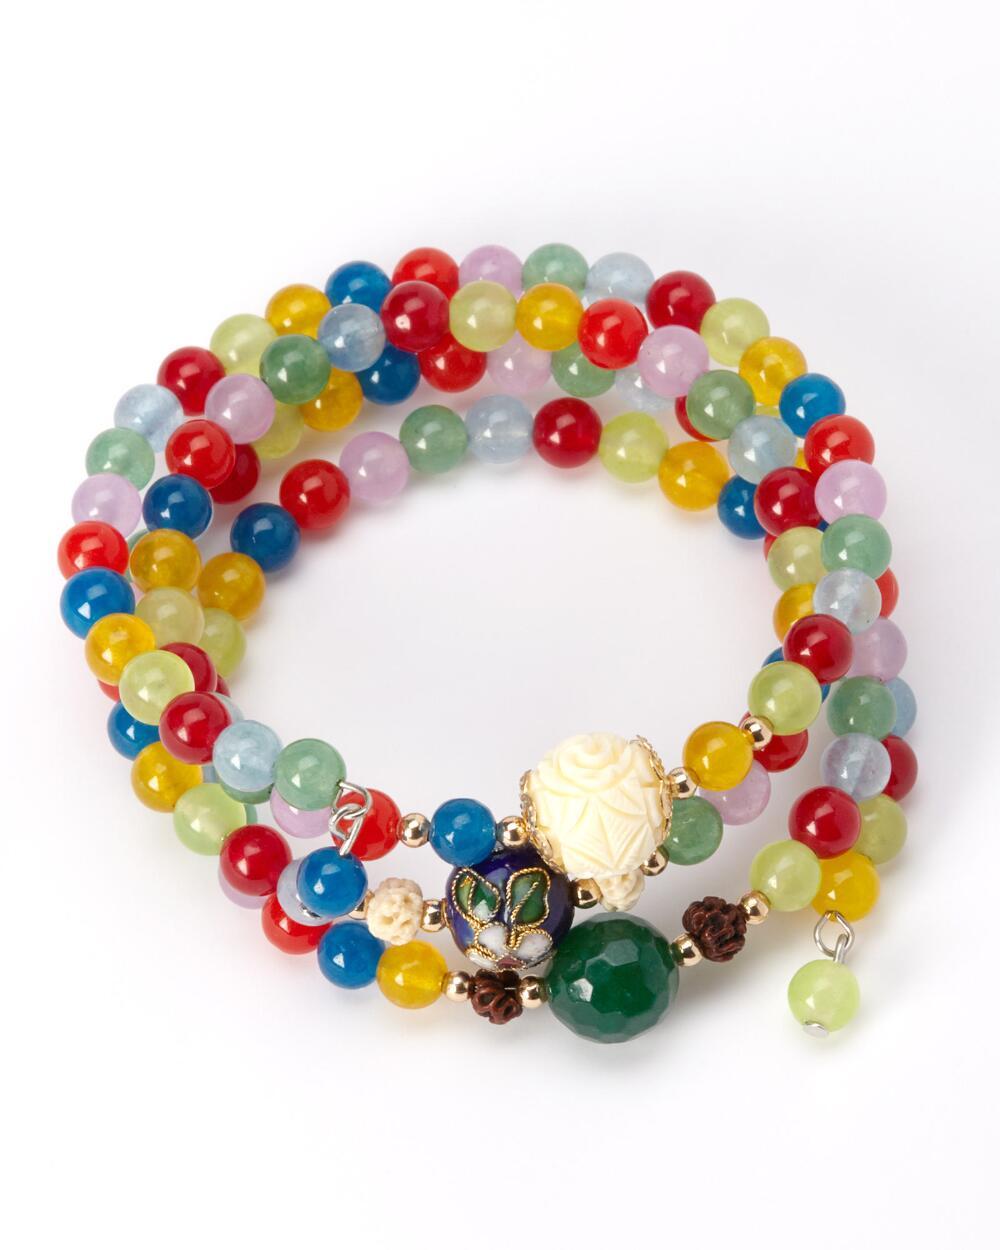 Smithsonian Agate Gemstones Wrap Bracelet NEW - $24.99